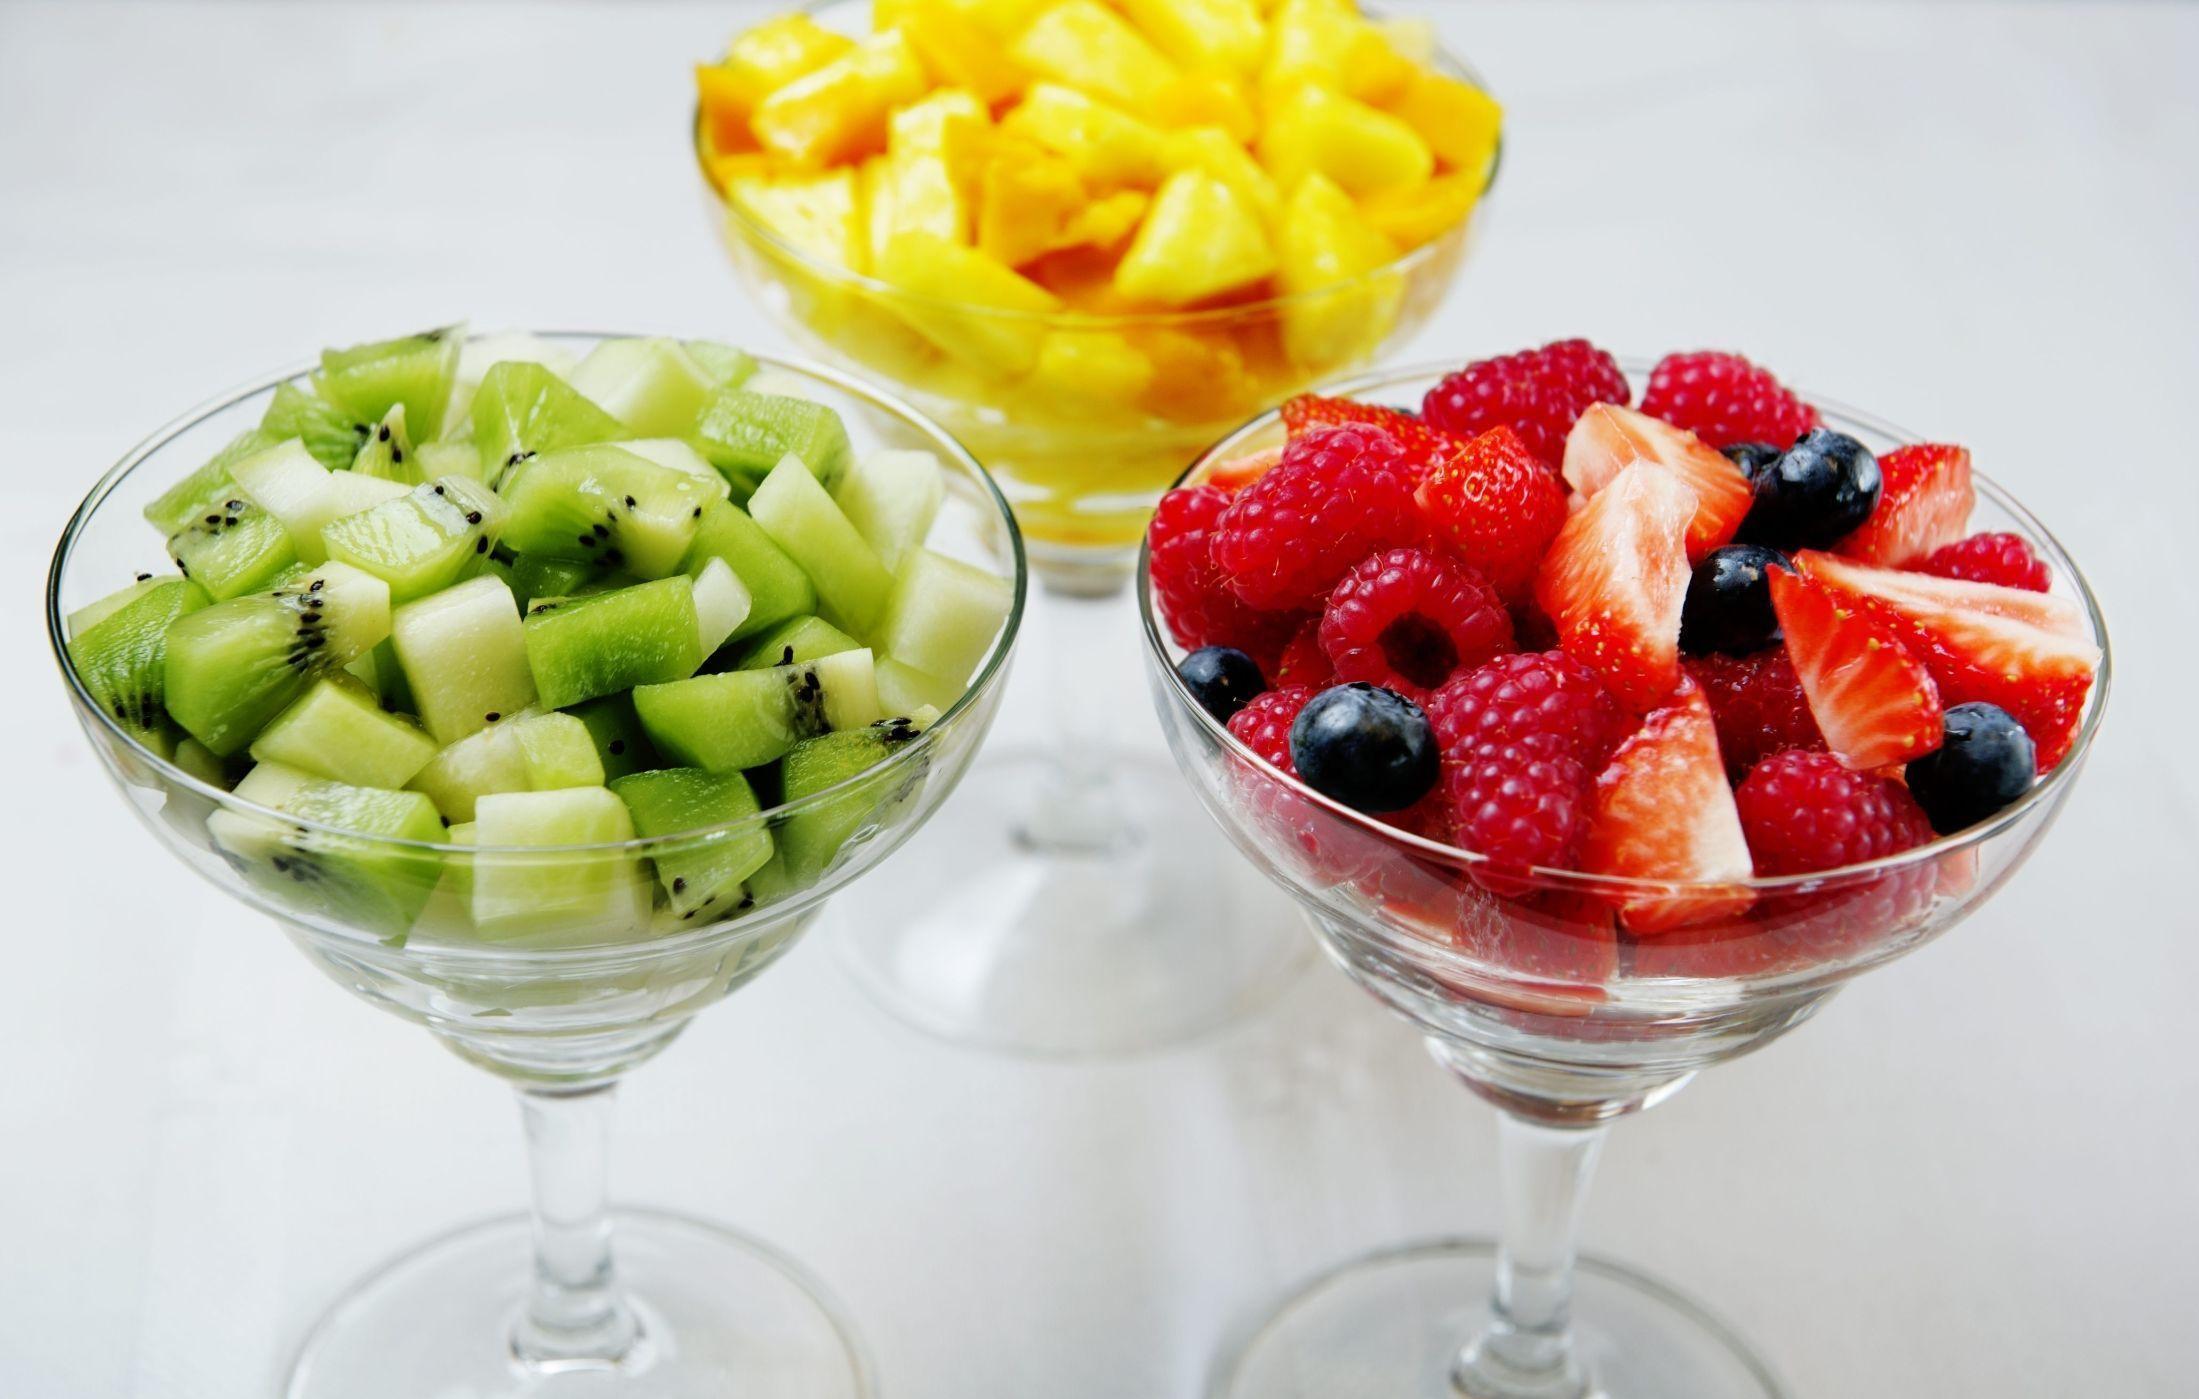 PORSJONERT: Gå gjerne for lik størrelse og lik porsjon av de forskjellige fruktene for å få en lekker og god miks. Foto: Line Møller/VG